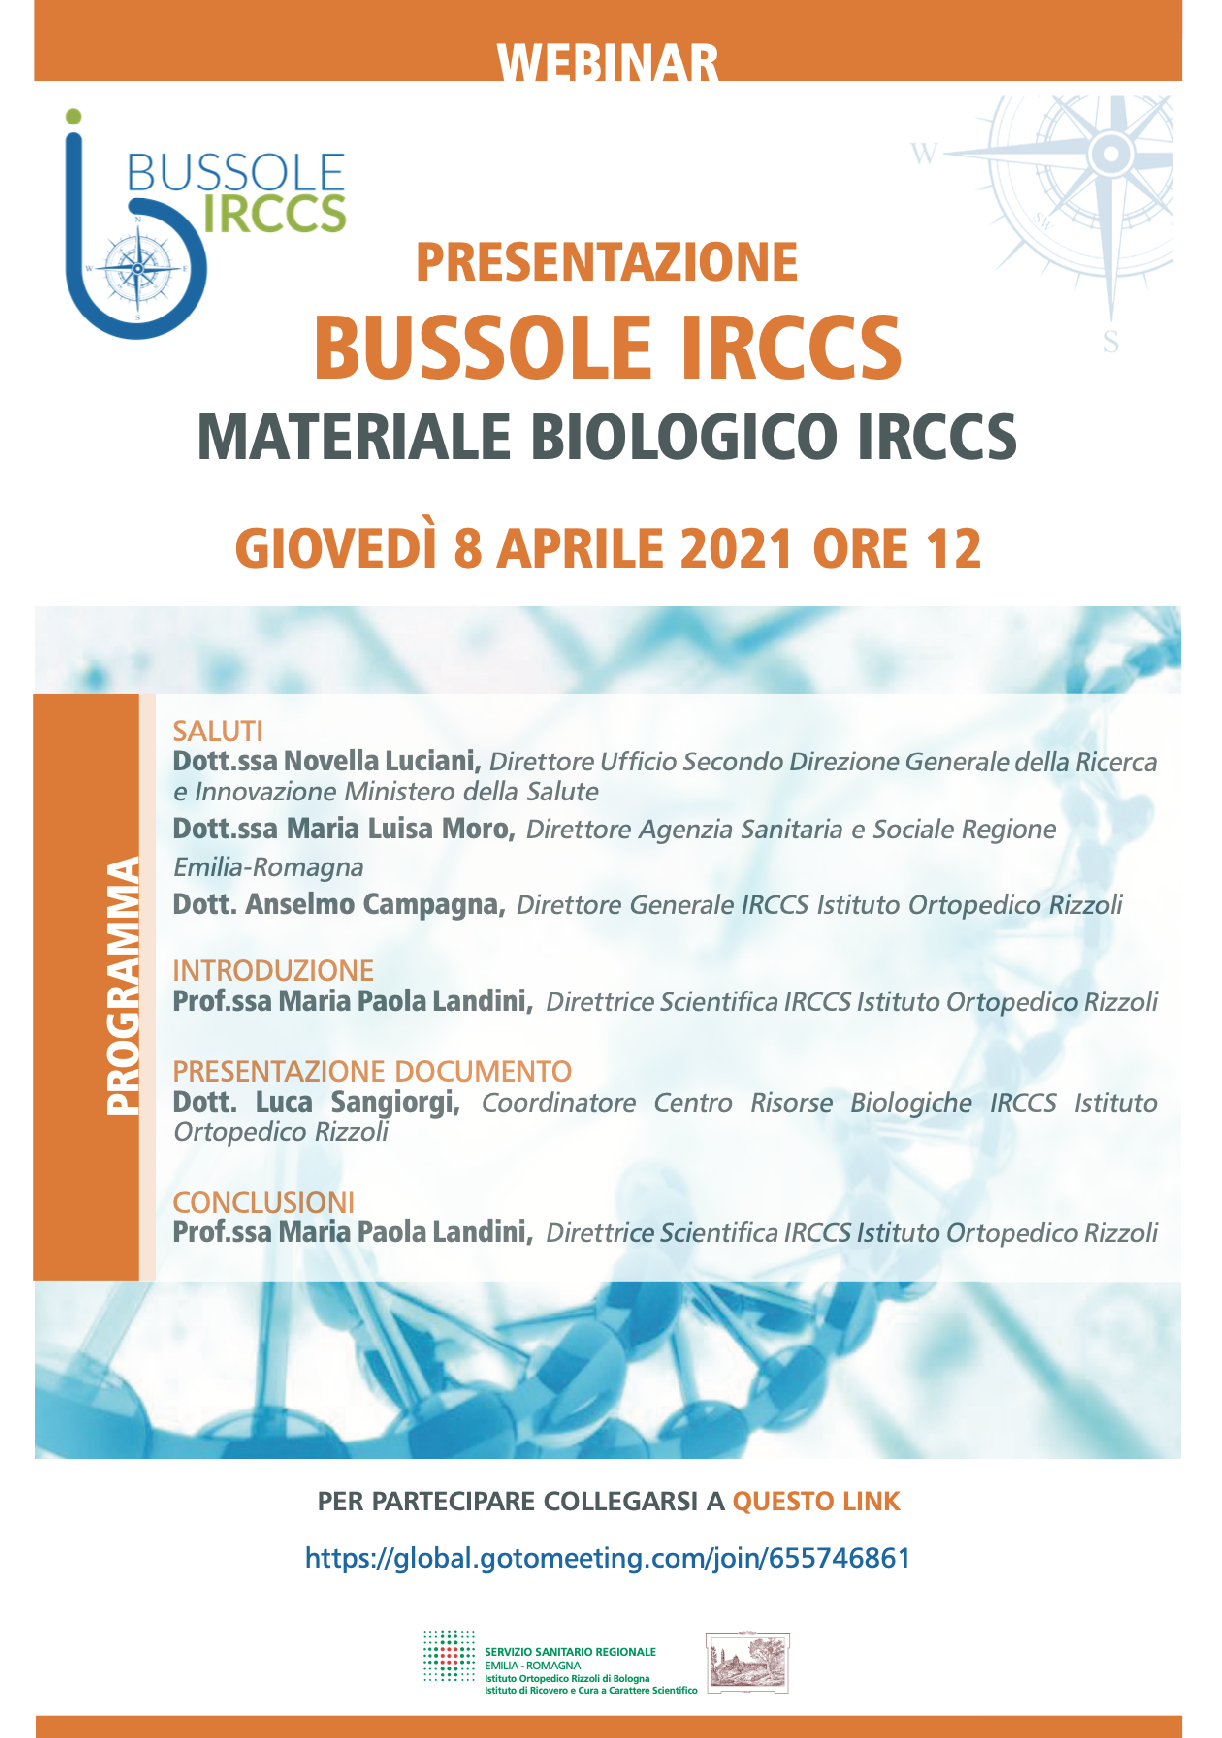 Presentazione Bussole IRCCS - Materiale biologico IRCCS